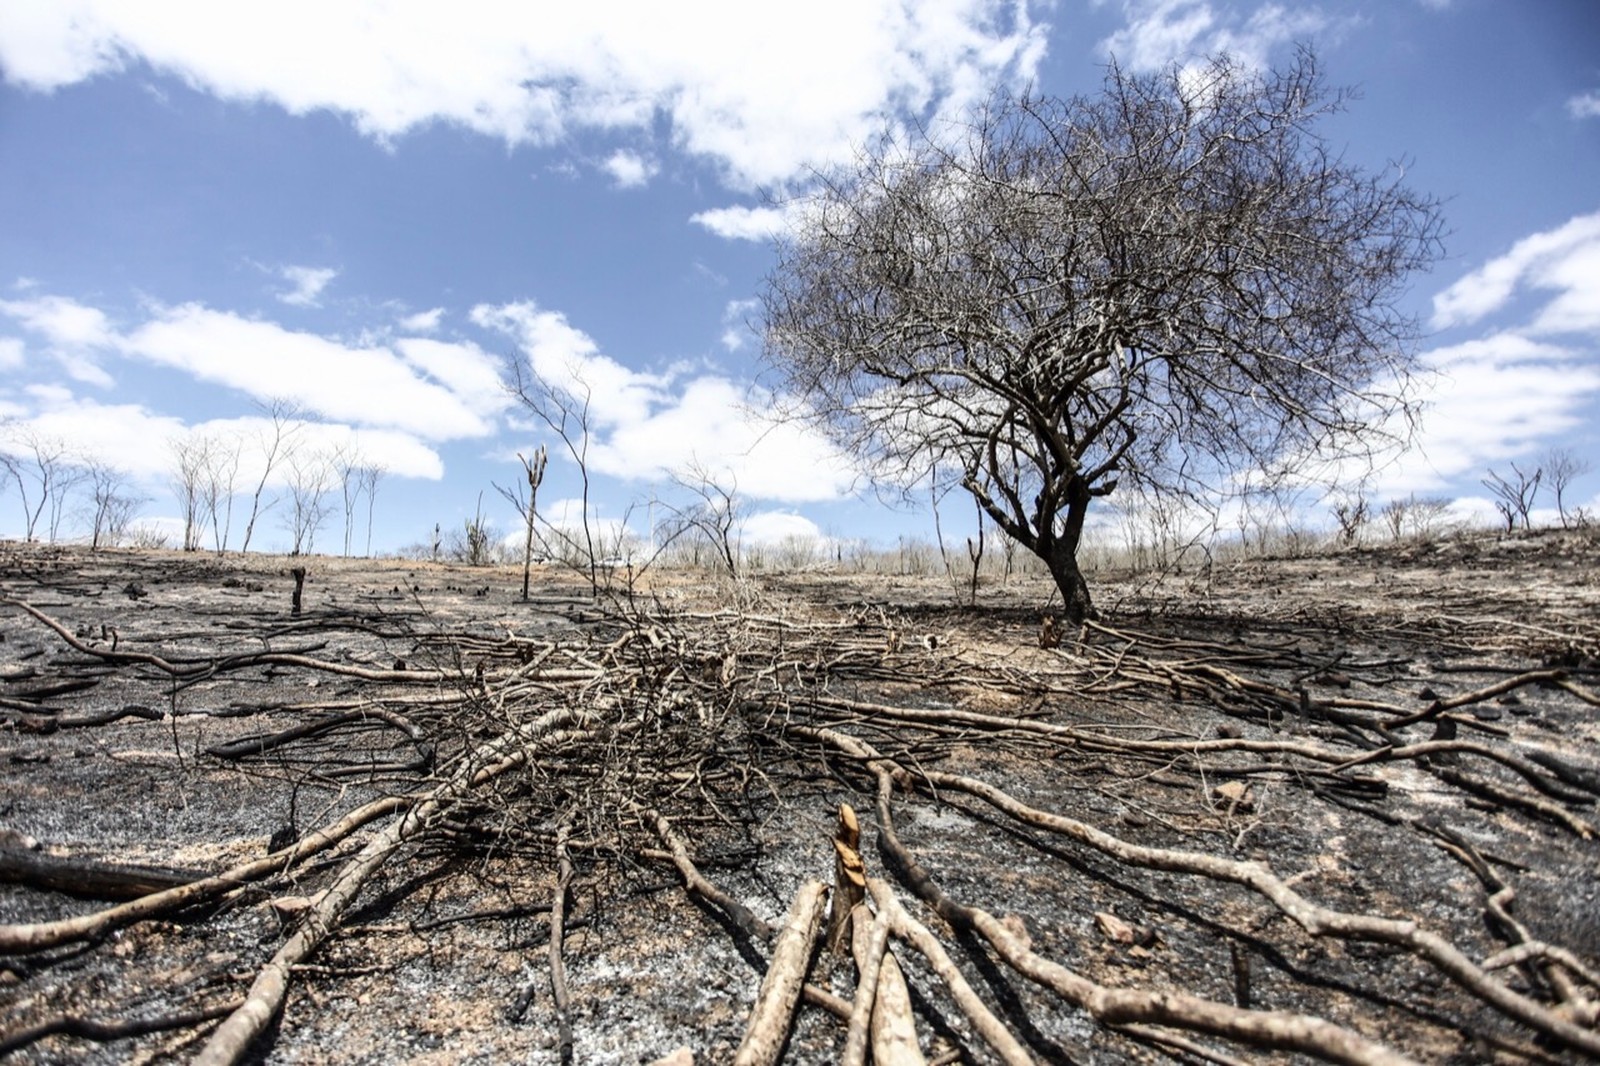 Brasil liderou desmatamento de florestas primárias no mundo em 2018, mostra relatório